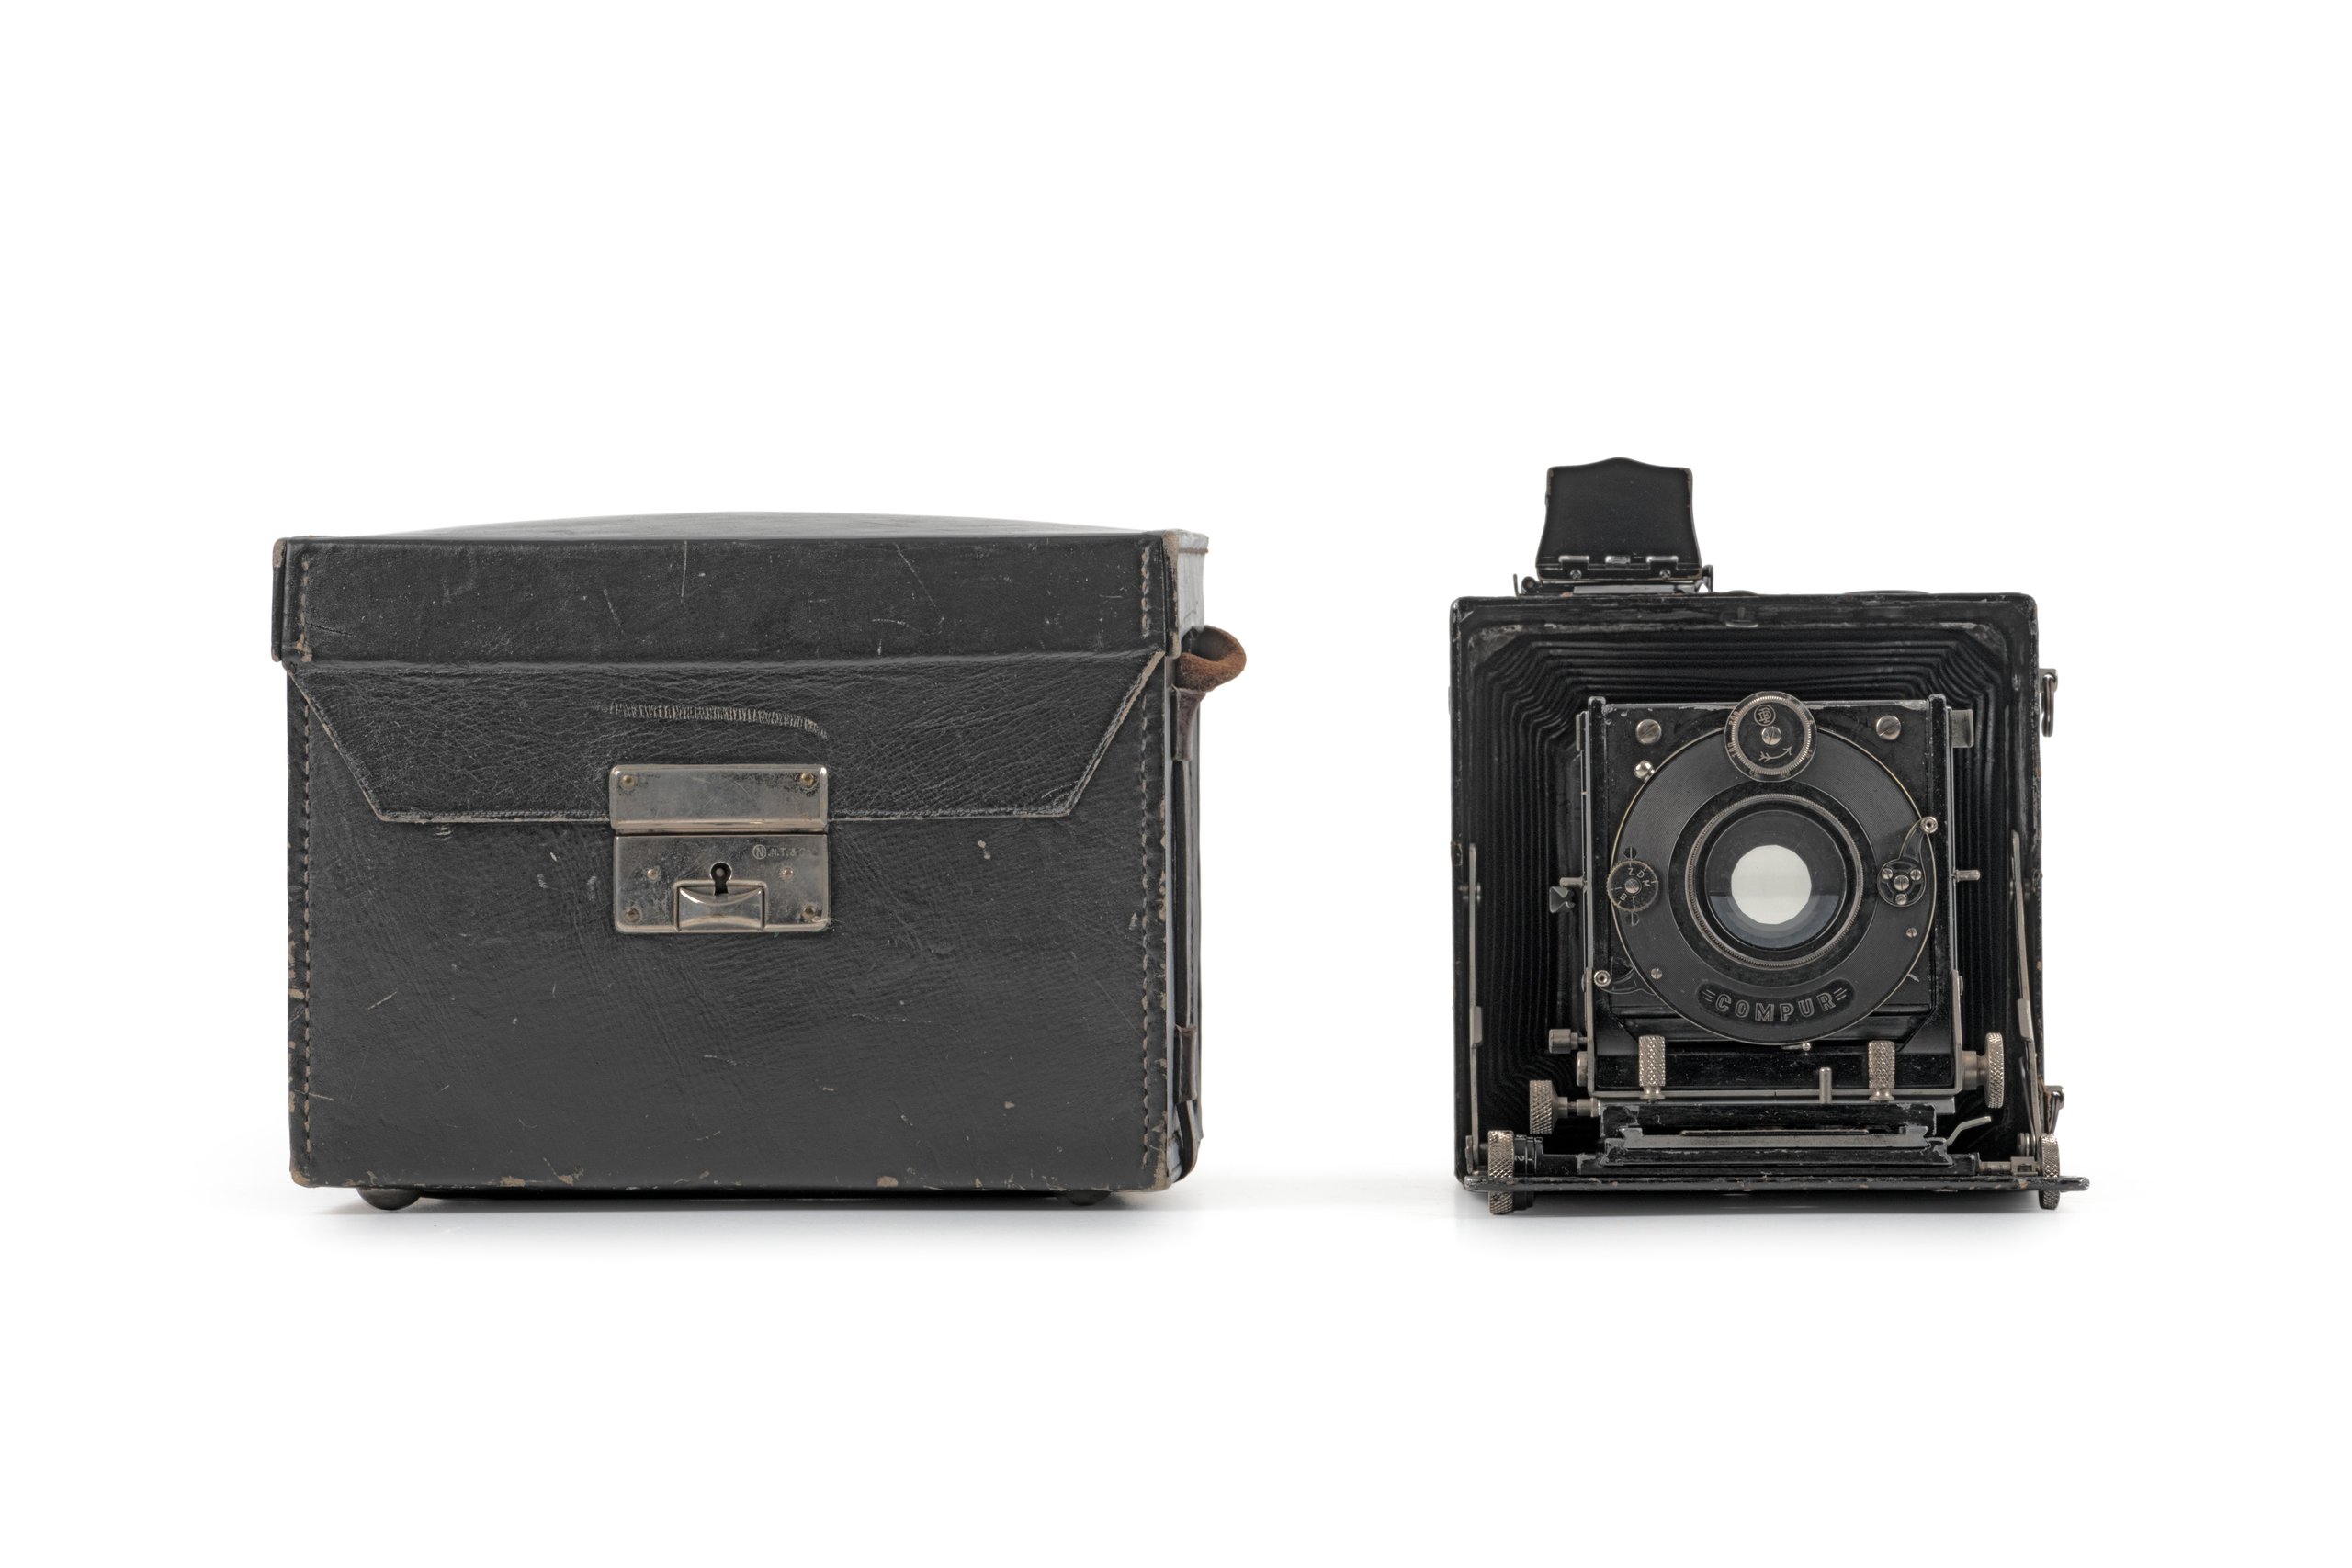 Linhof Satzplasmat camera and accessories